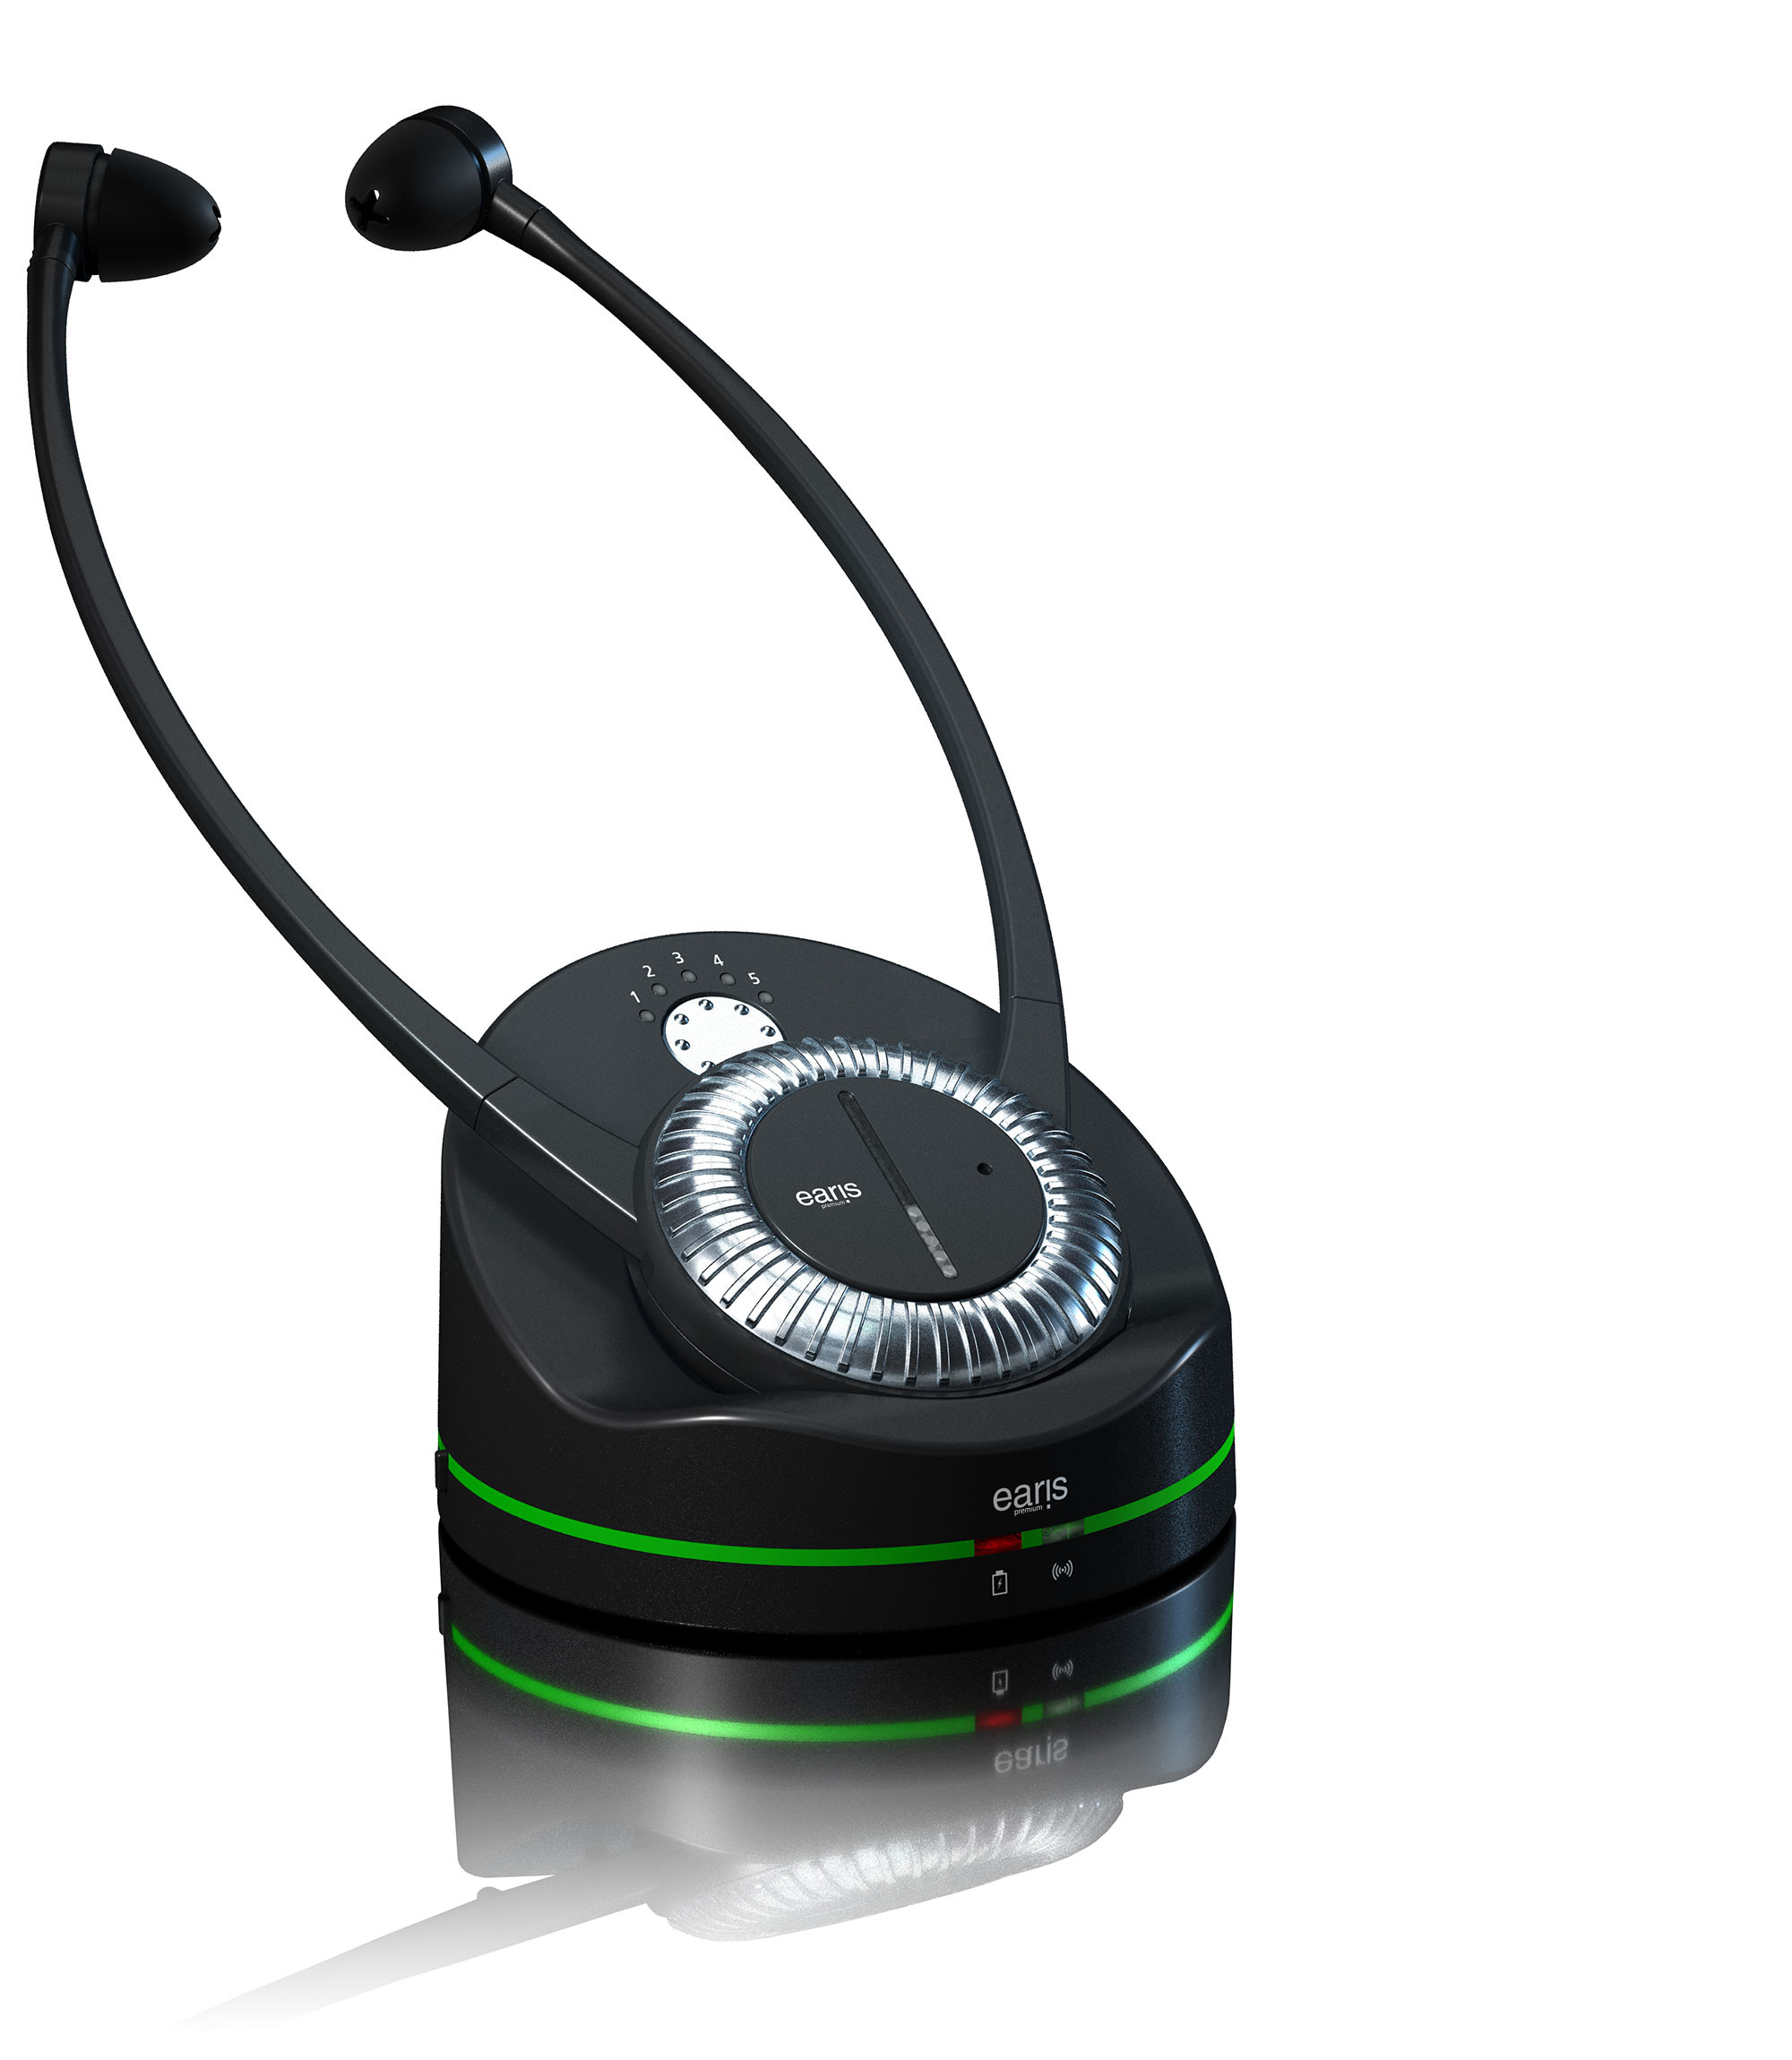 Audiologix - Bien-être auditif - Réveil digital DS-2